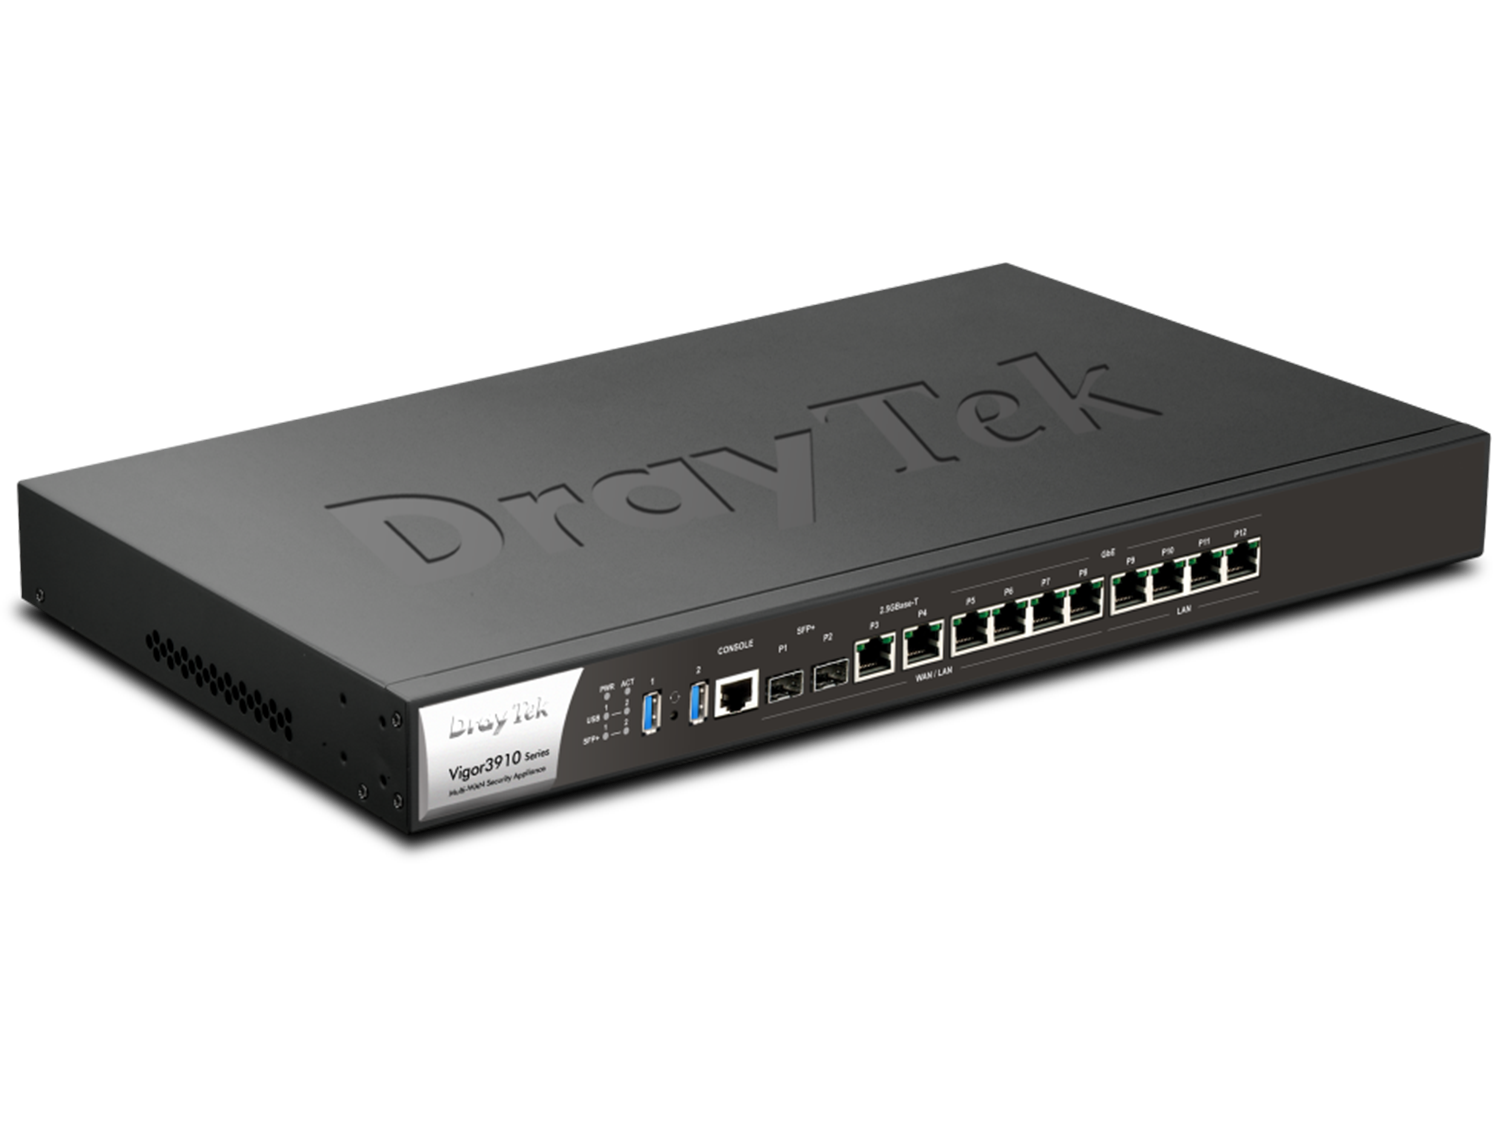 Draytek Vigor 3910 Router (v3910-DE-AT-CH)